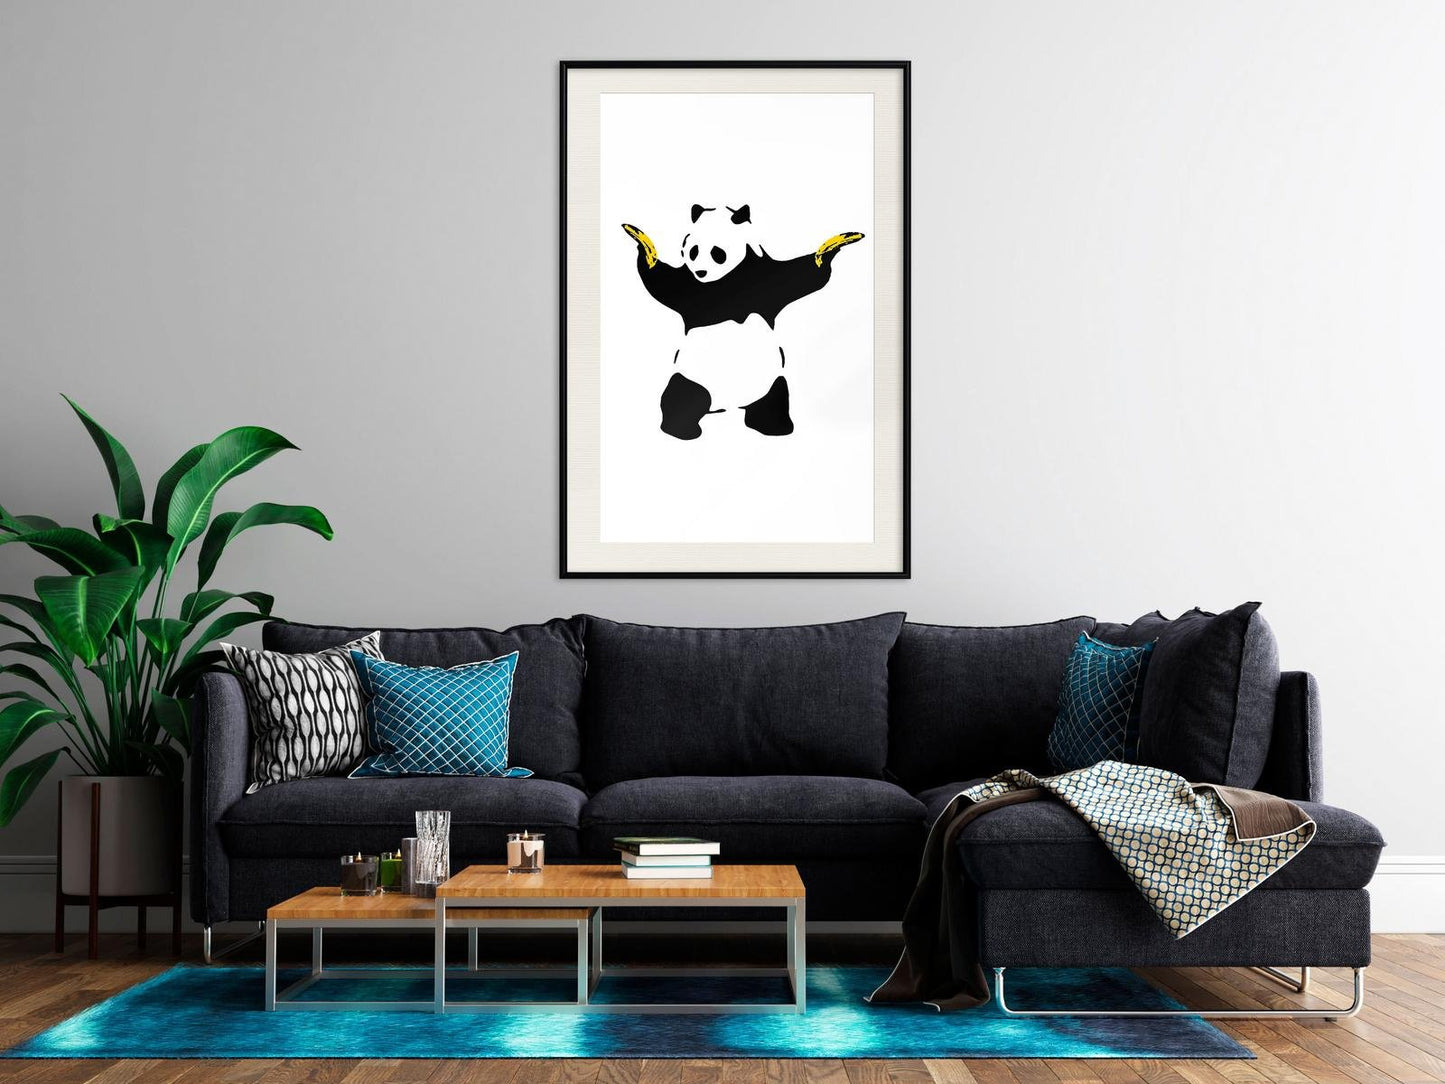 Banksy: Panda mit Waffen